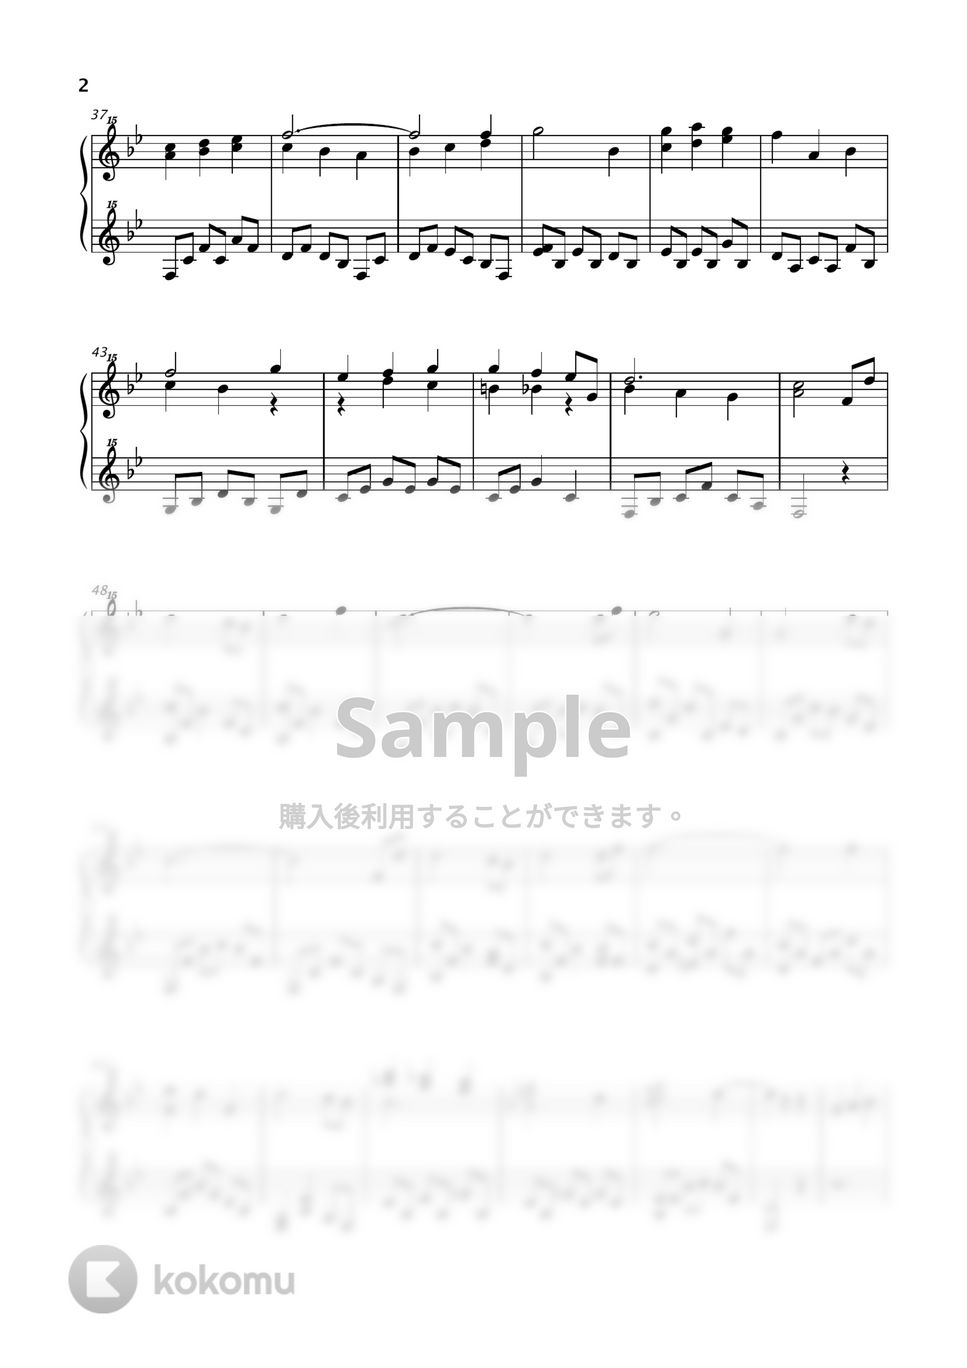 木村弓 - 世界の約束 (ジブリ / ハウルの動く城 / トイピアノ / 32鍵盤) by 川西三裕